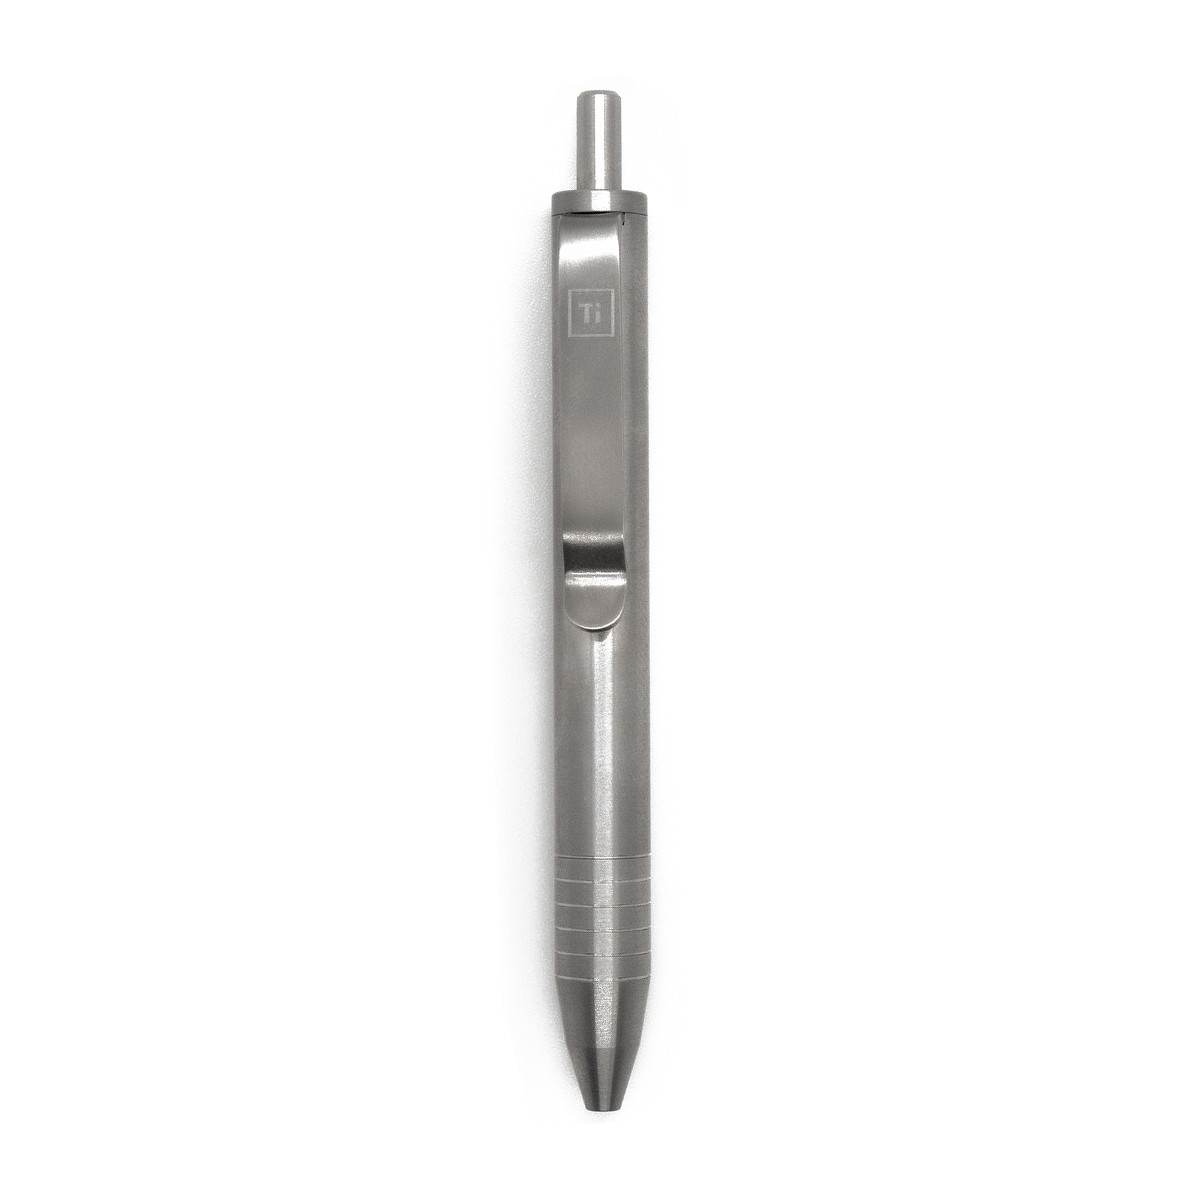 Big Idea Design - EDC Pens and Tools